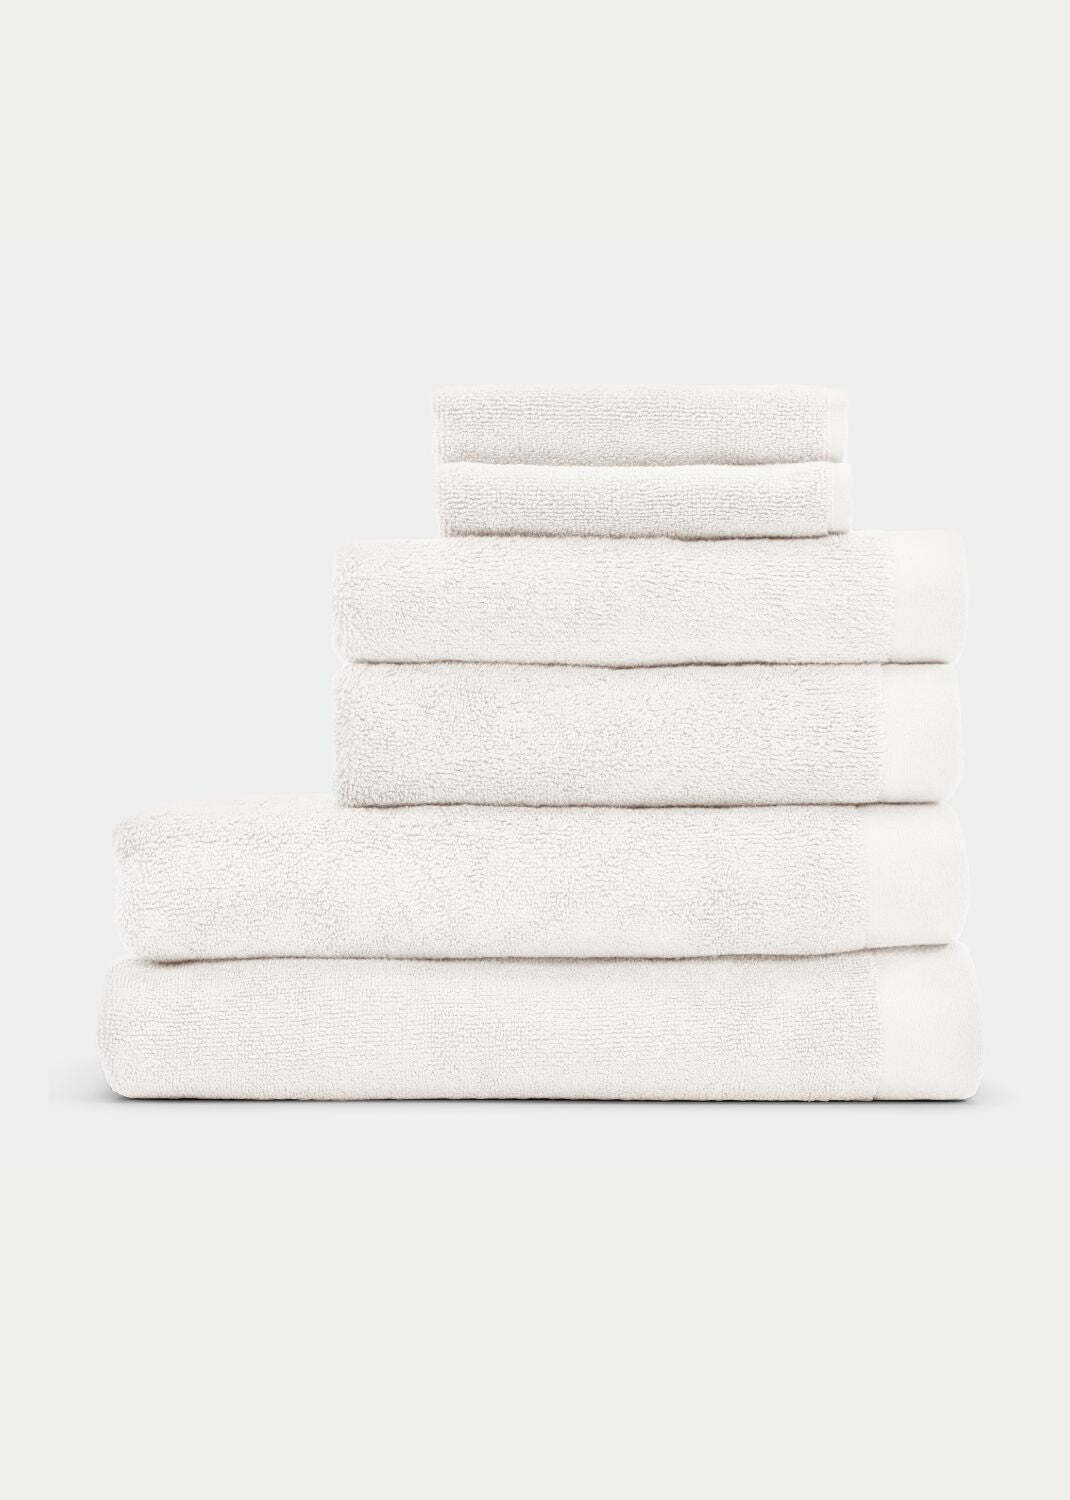 Handtuch Baumwolle Weiß 70 x 130 cm 0